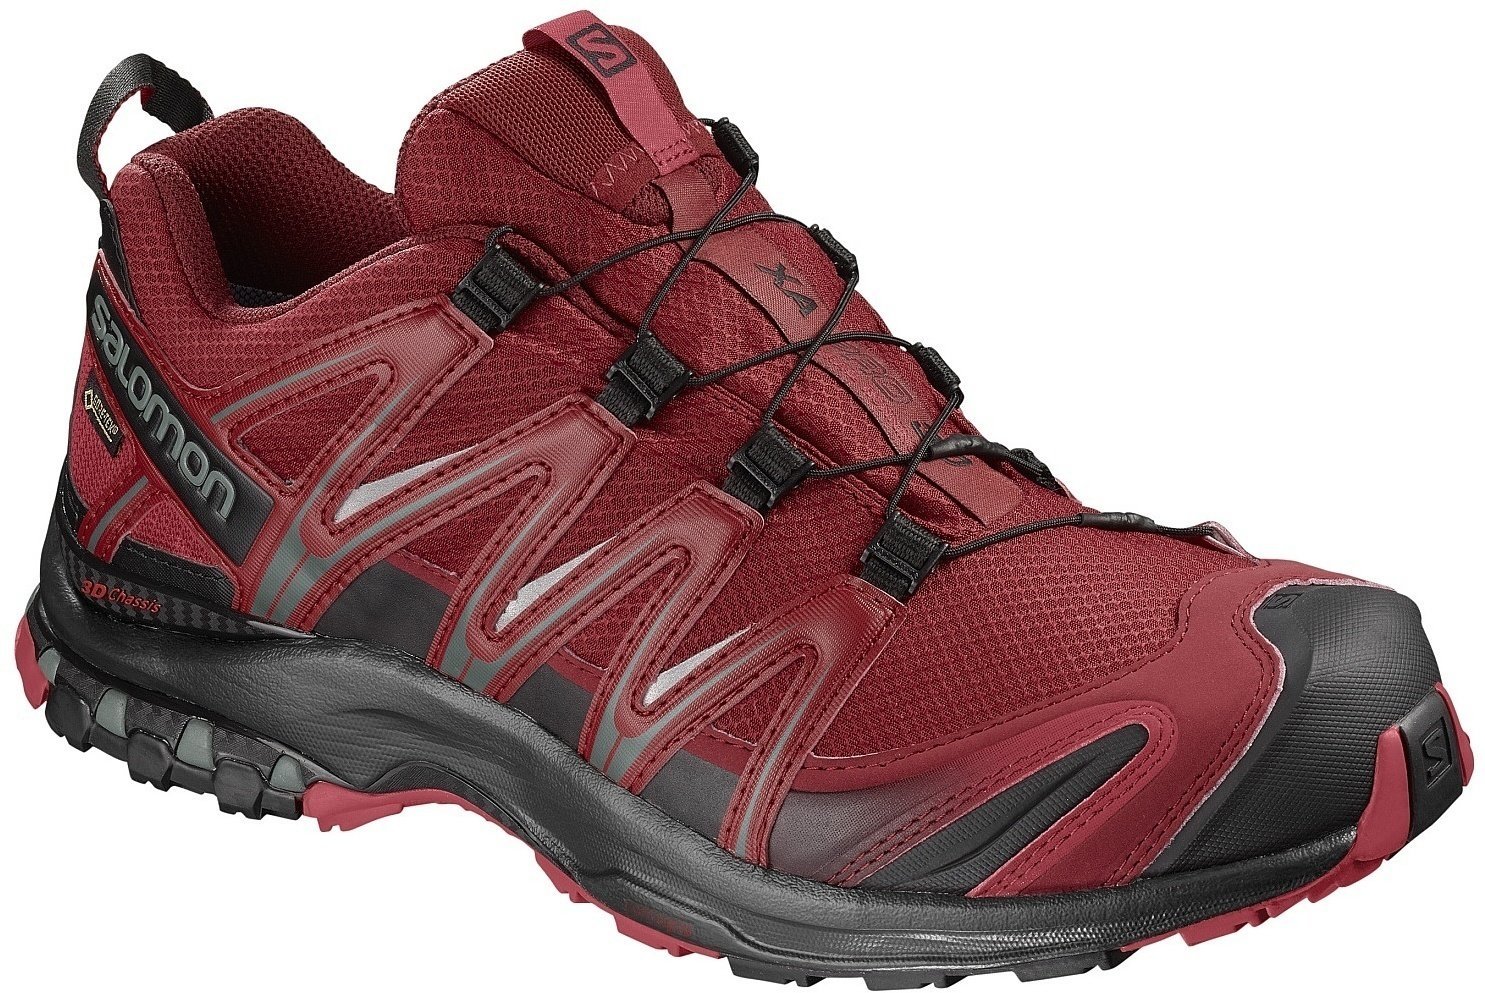 Mens Outdoor Shoes Salomon XA Pro 3D GTX Red Dahlia/Black/Barbados Cherry 45 1/3 Mens Outdoor Shoes